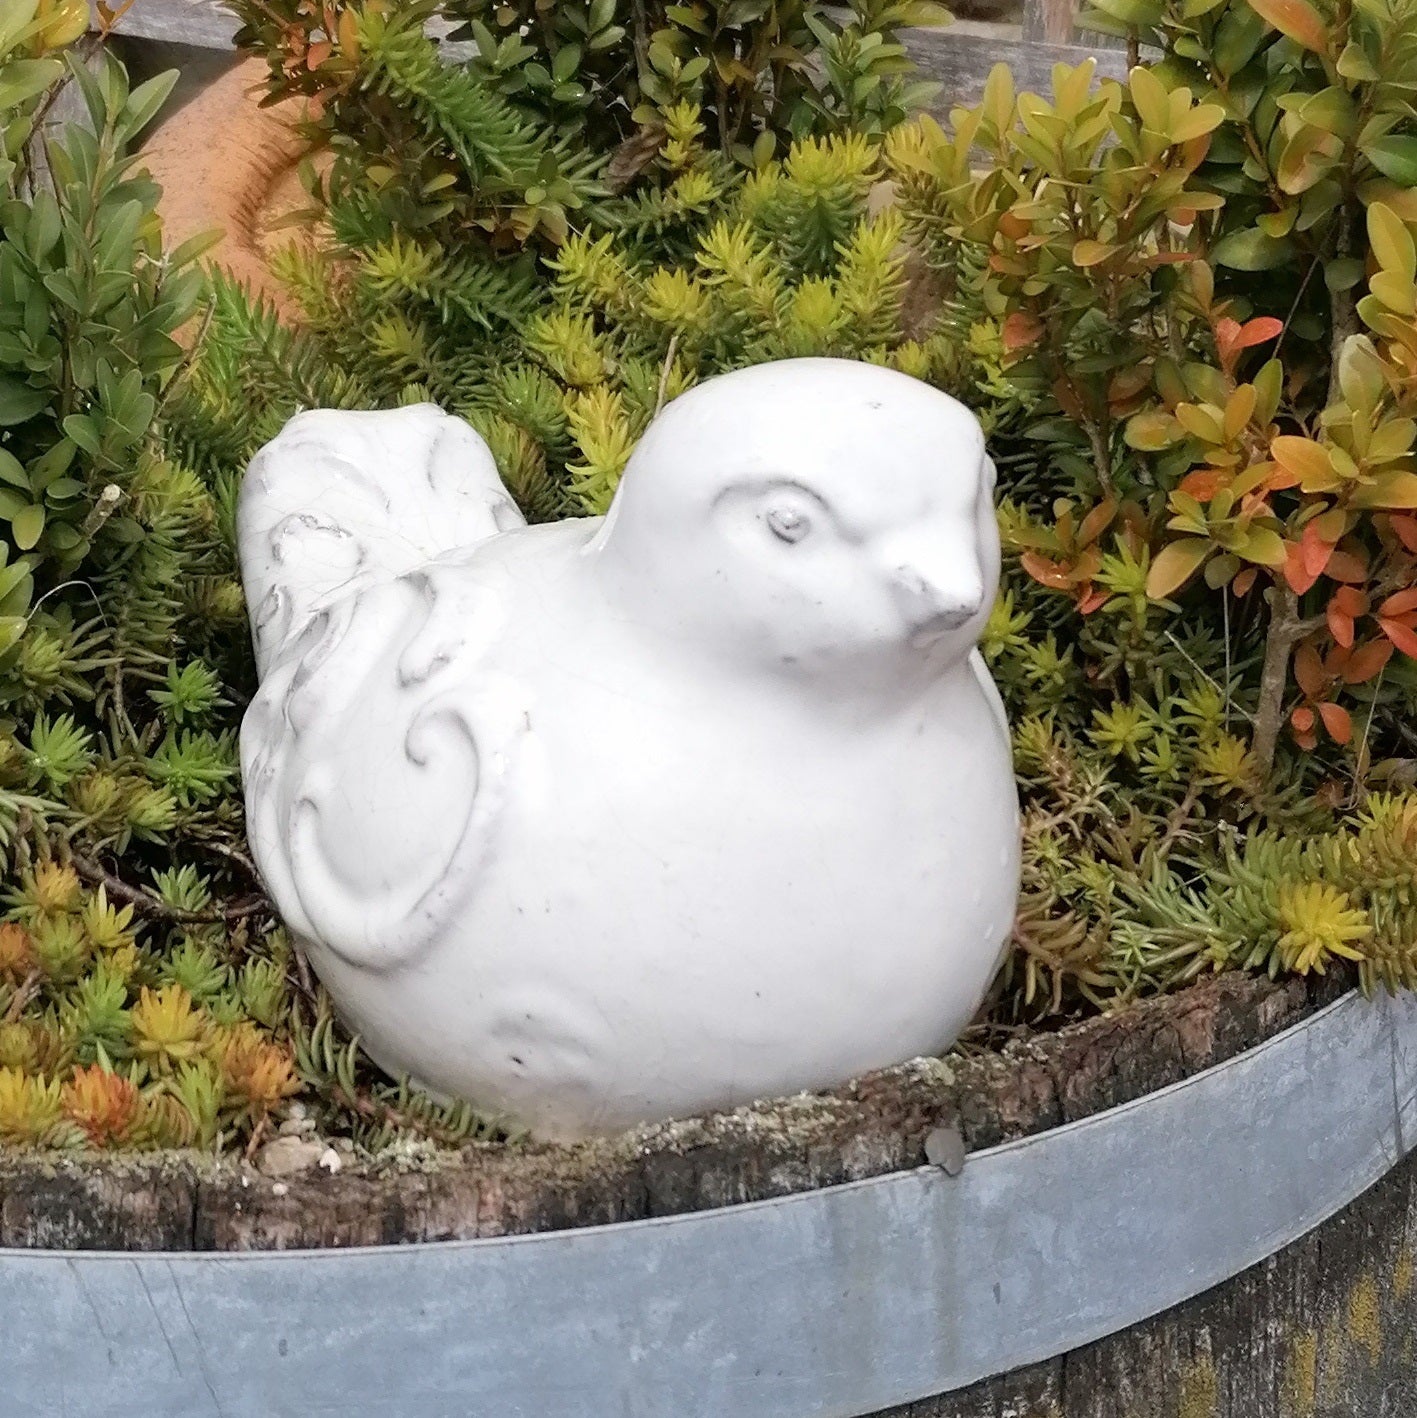 NEU !! 2. Wahl ! Vogel aus frostfesten Steinzeug weißlich glasiert ca. 16 cm lang Deko Garten Spatz Figur Taube